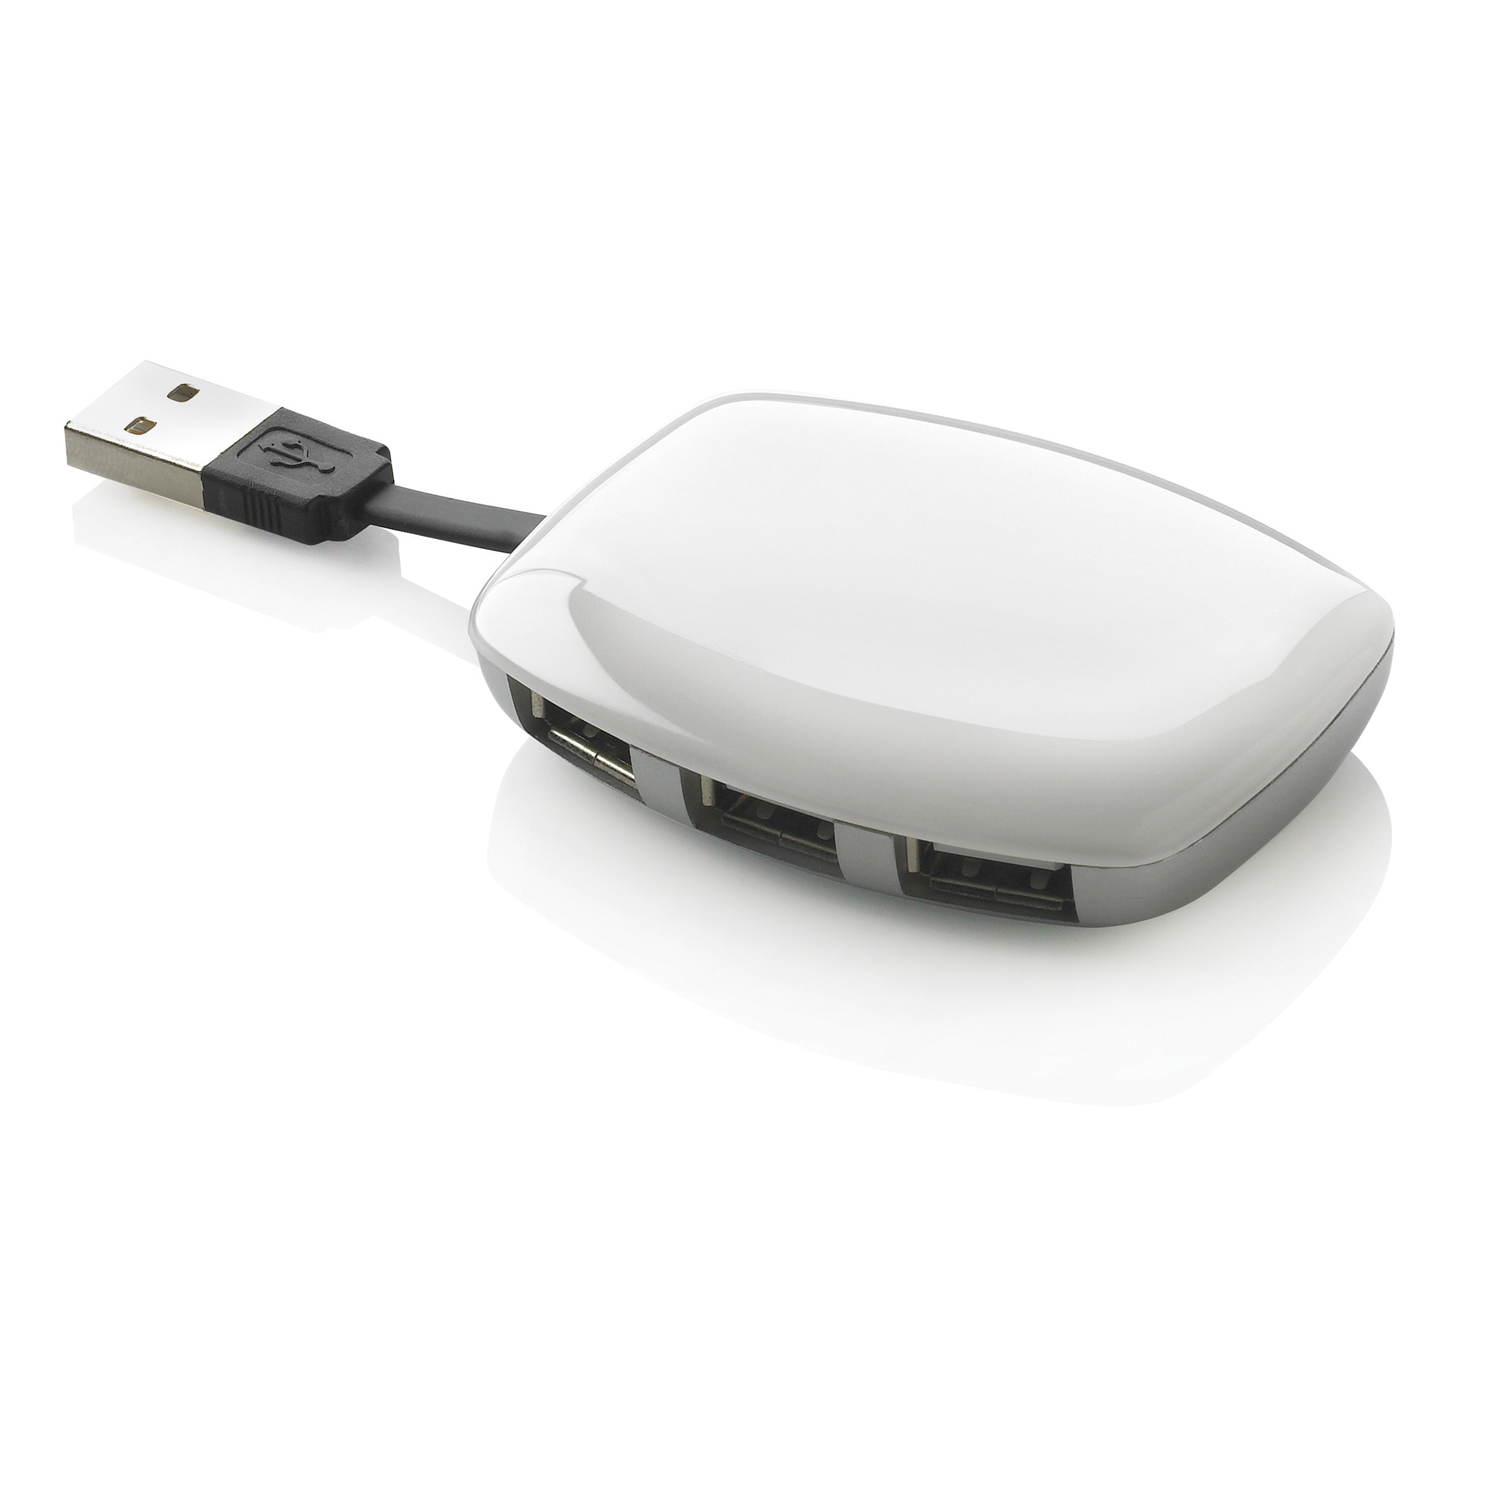 USB-хаб и картридер